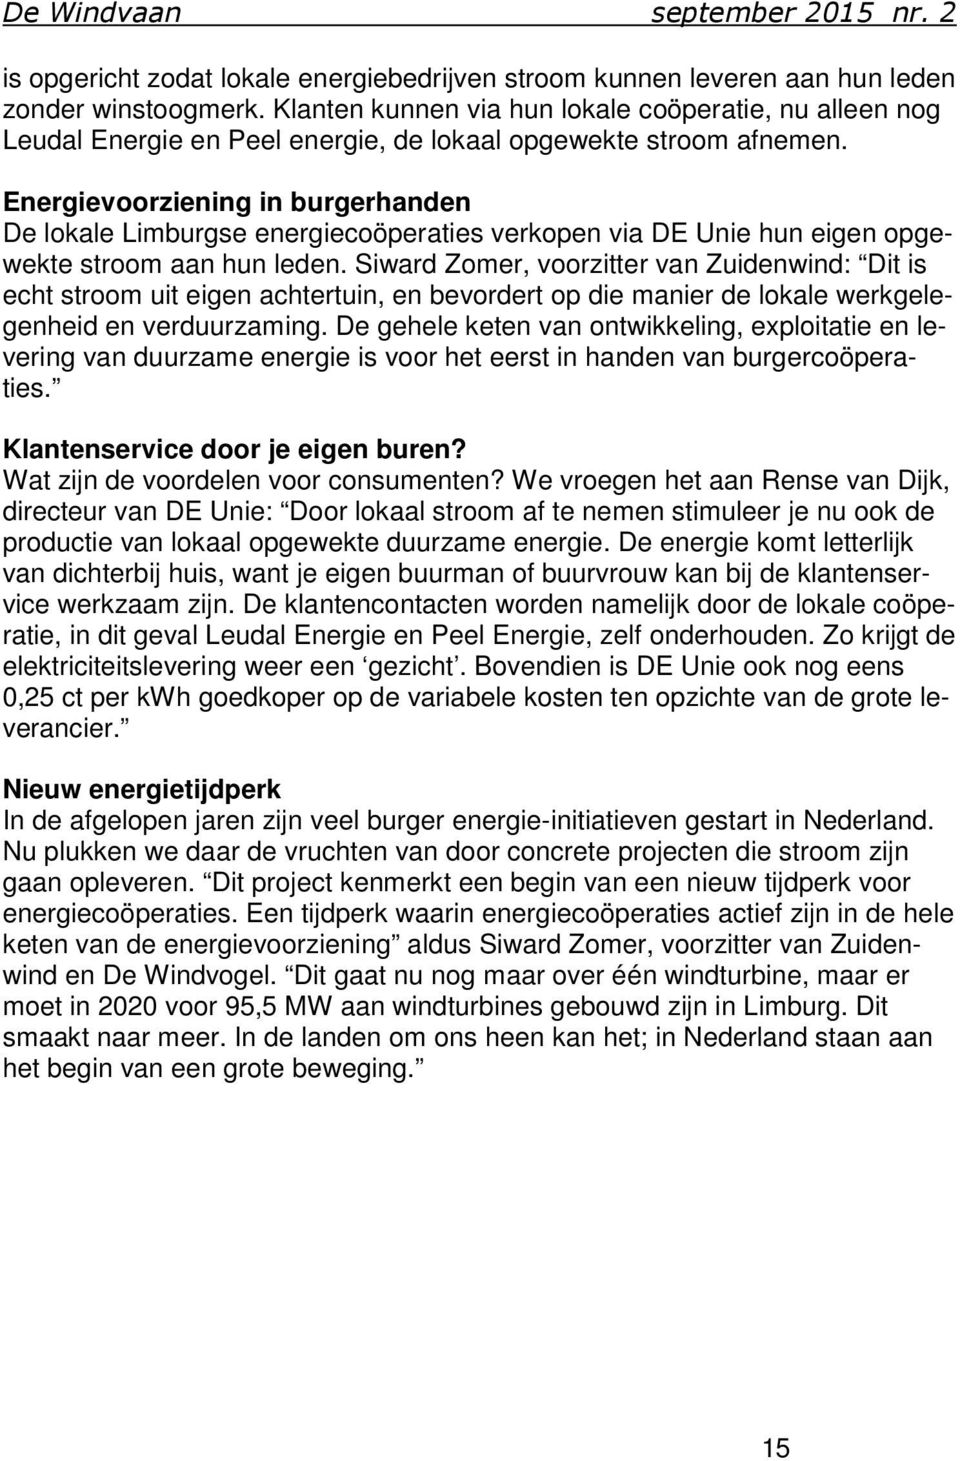 Energievoorziening in burgerhanden De lokale Limburgse energiecoöperaties verkopen via DE Unie hun eigen opgewekte stroom aan hun leden.